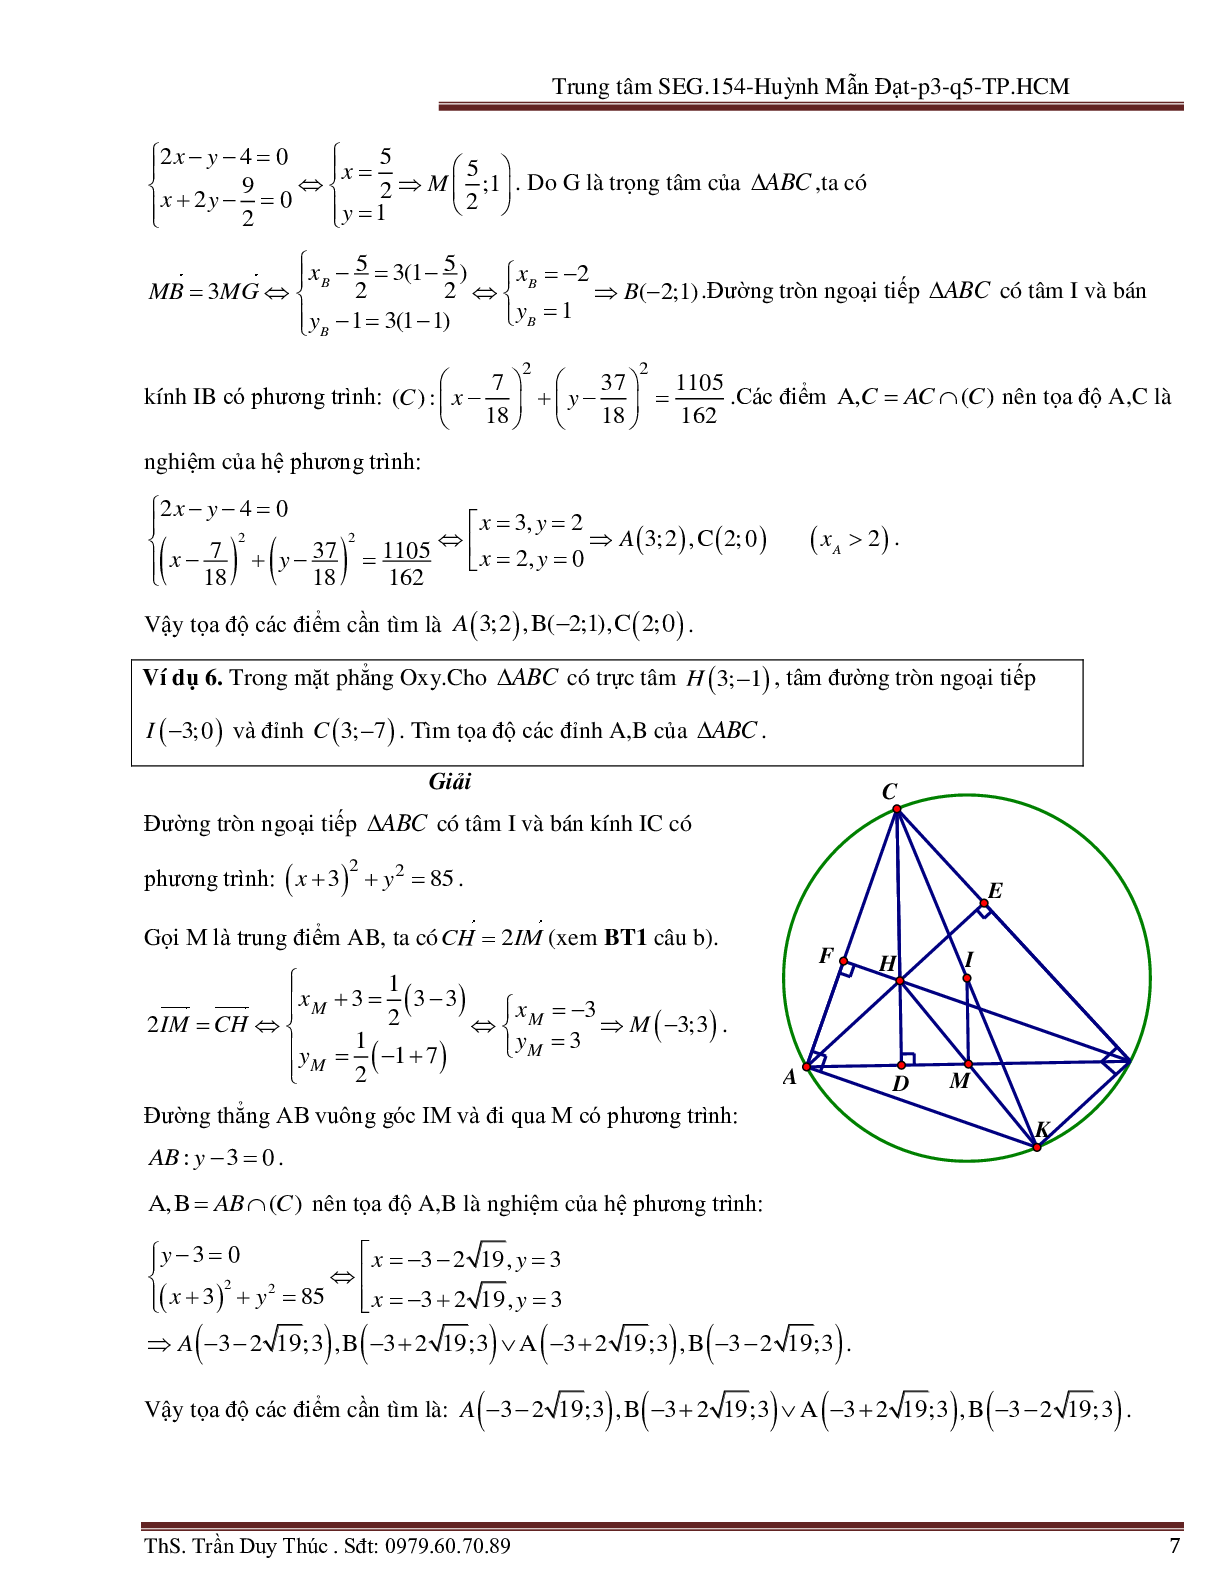 Vận dụng tính chất hình phẳng để giải bài toán Oxy liên quan đến đường tròn (trang 7)